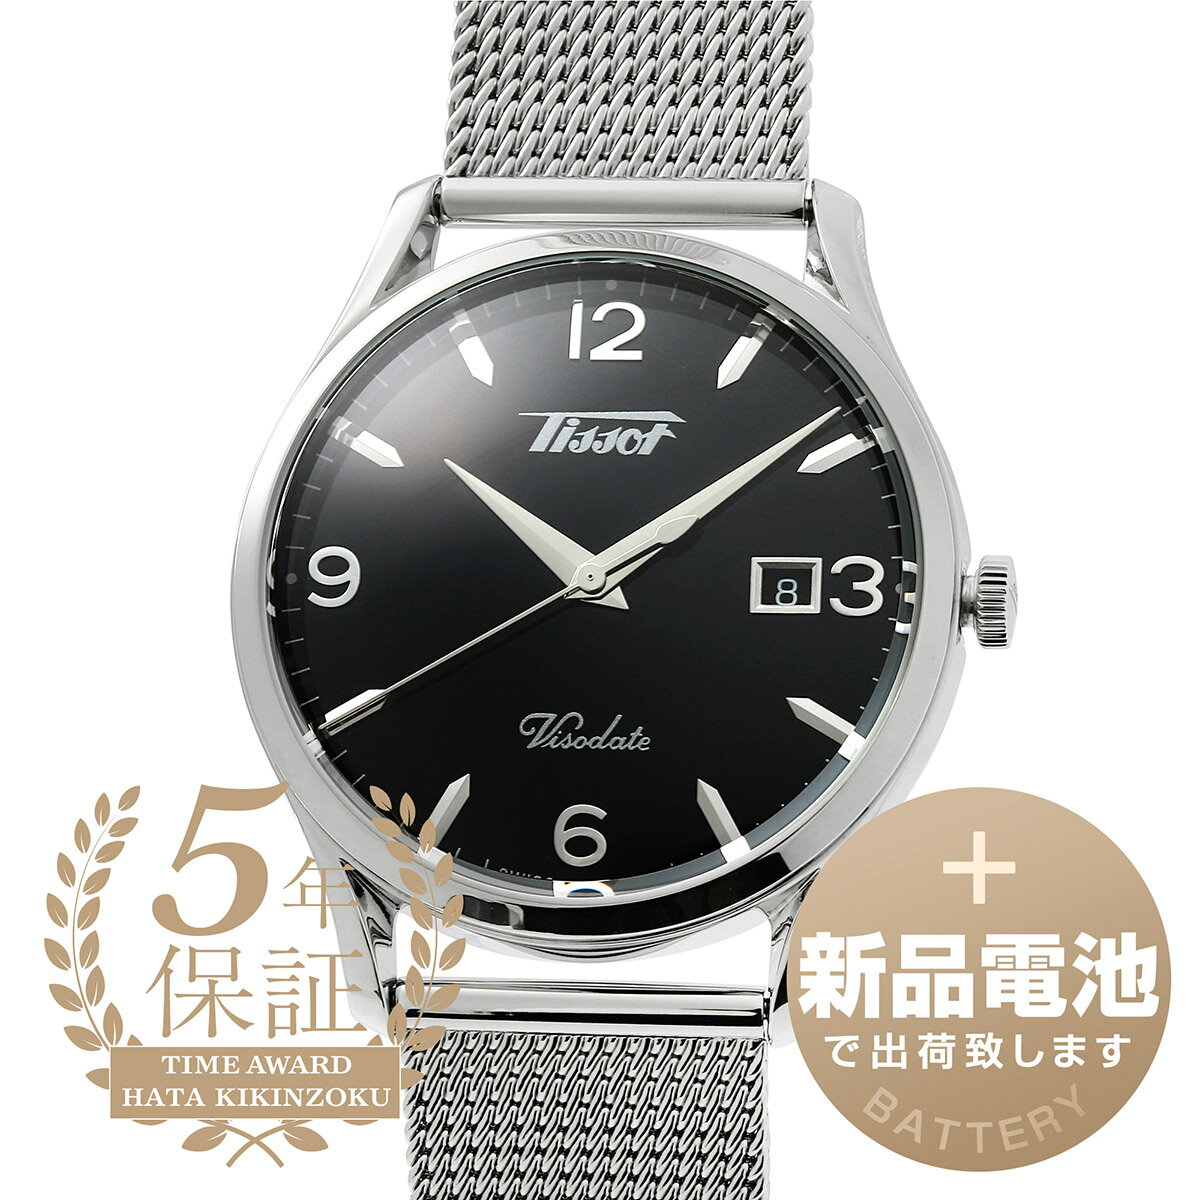  ティソ ヘリテージ ヴィソデート 腕時計 TISSOT HERITAGE VISODATE T118.410.11.057.00 ブラック メンズ ブランド 時計 新品